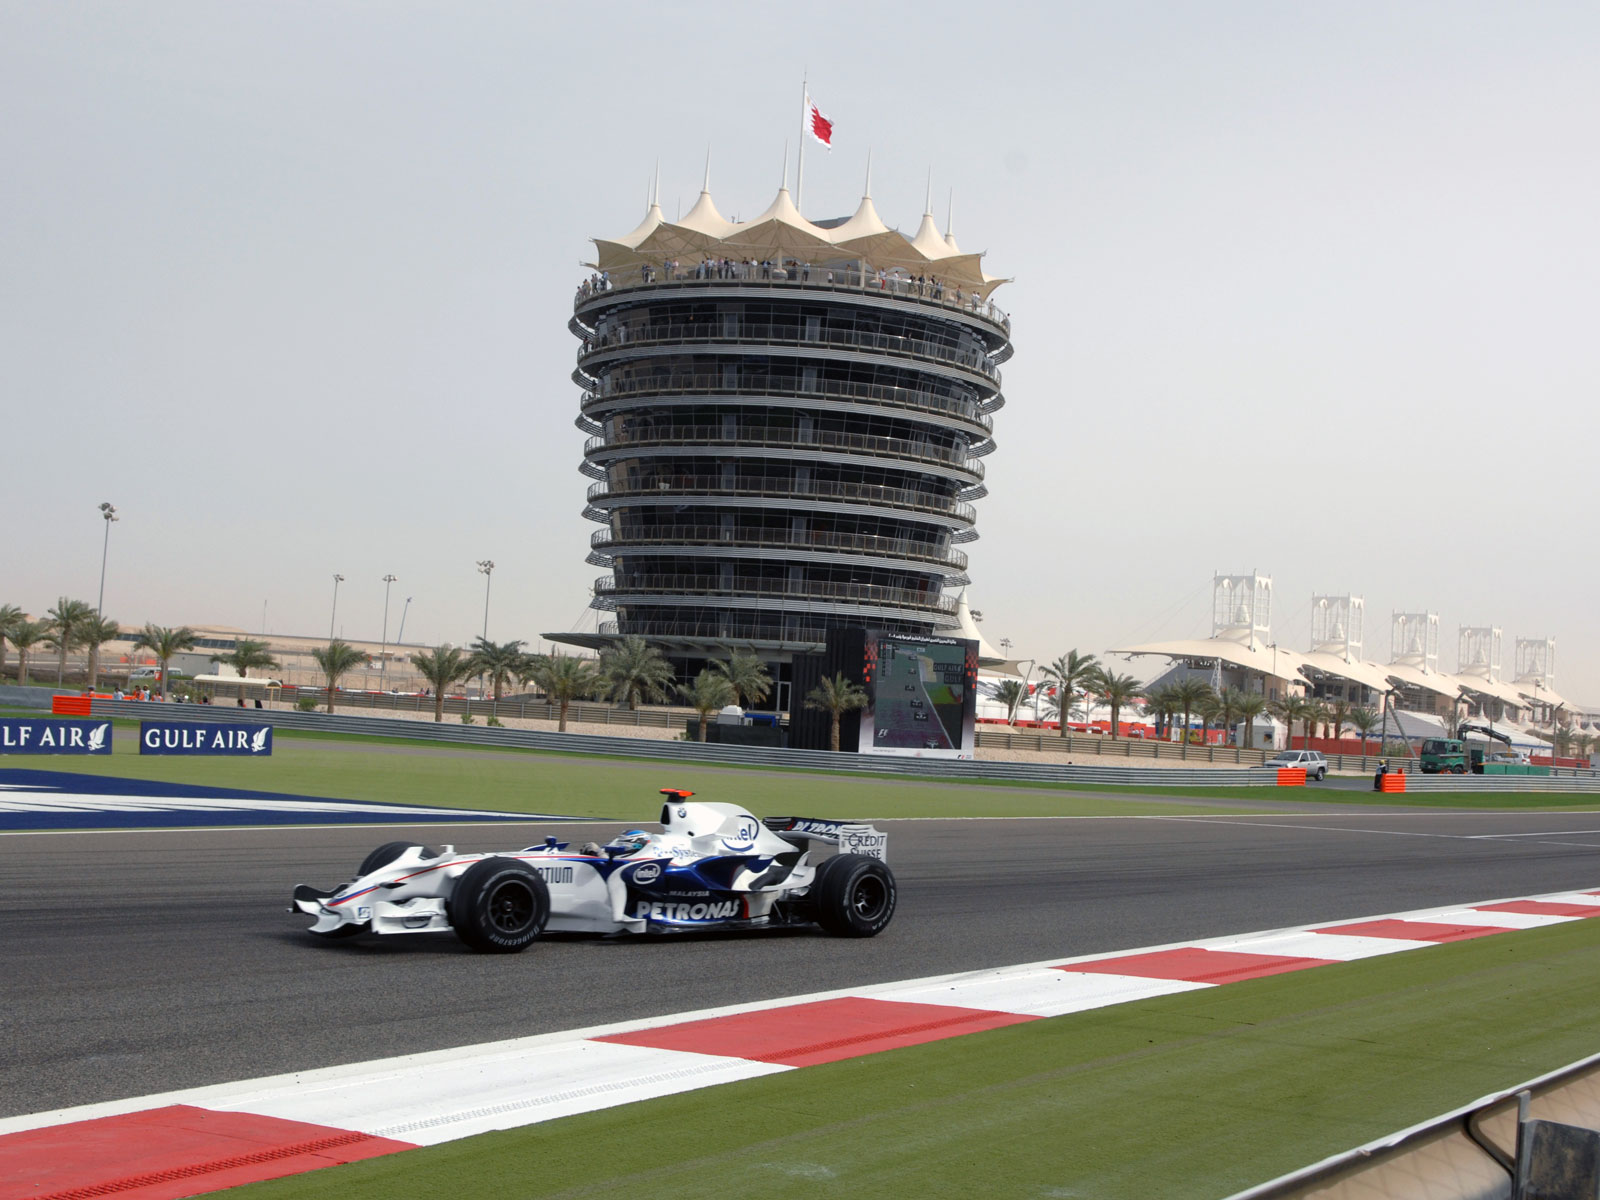 
Гран При Бахрейна приносит местной экономике $500 млн.